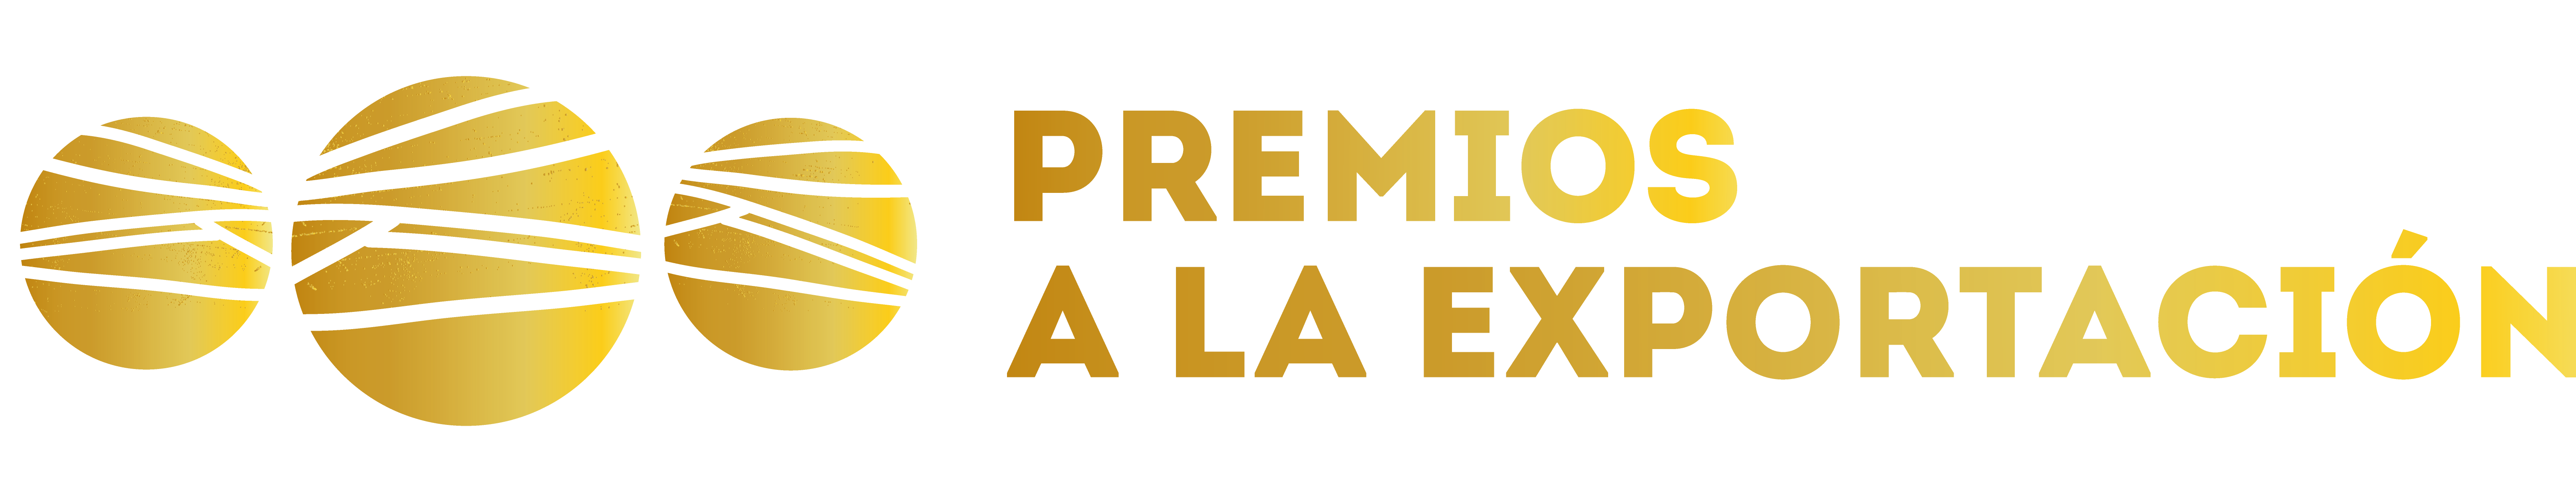 gu-a-de-los-premios-a-la-exportaci-n-2017-arag-nexporta-arag-n-exporta